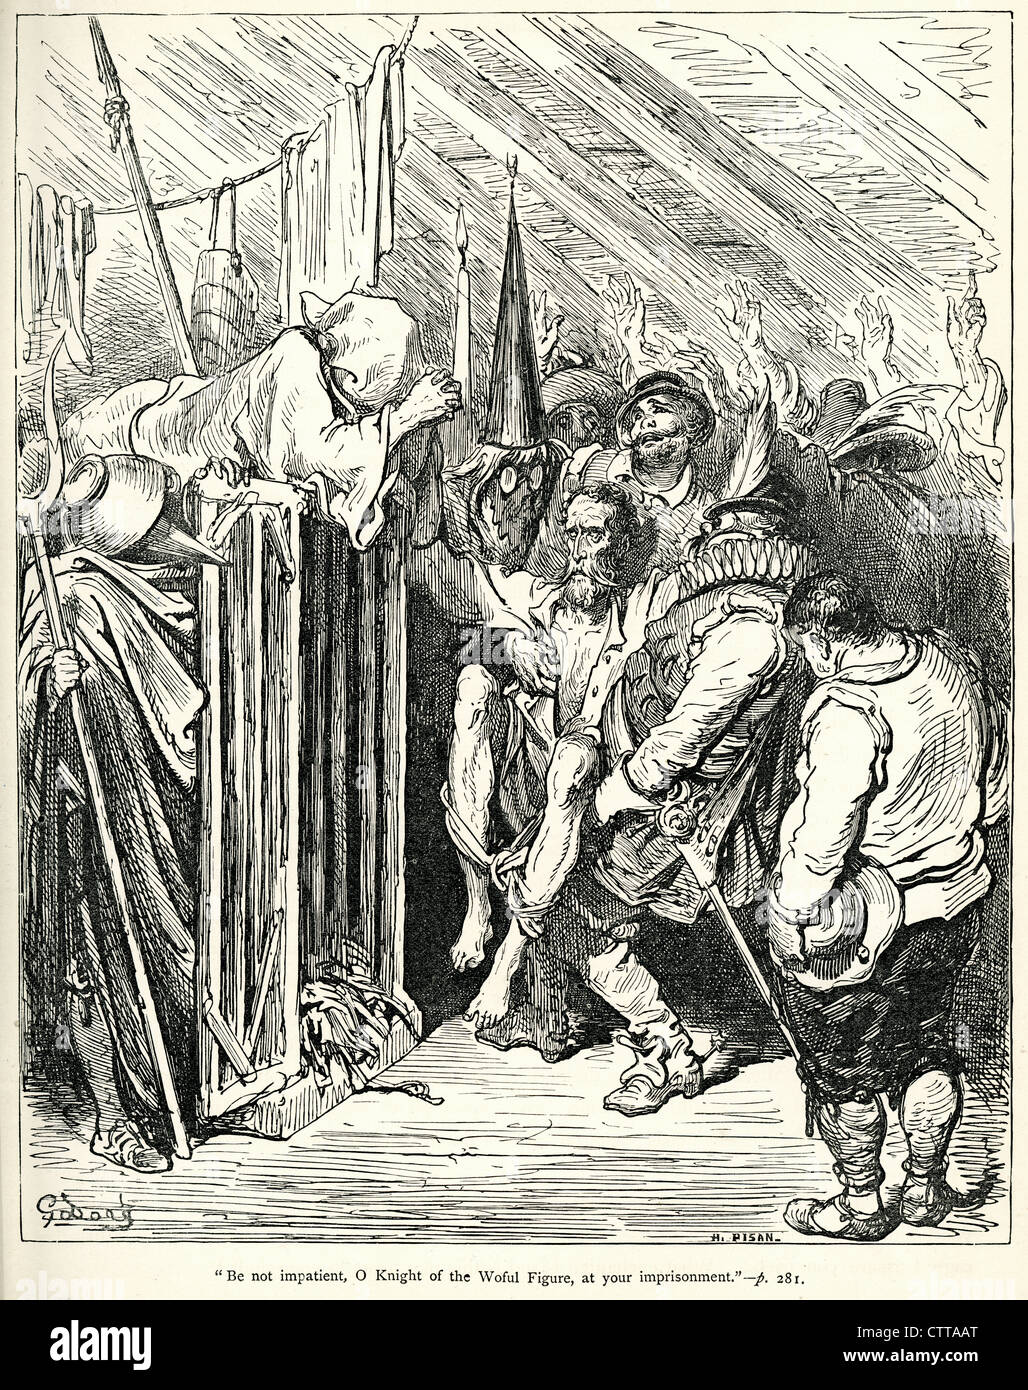 Werde nicht ungeduldig O Ritter des Wehwalt Figur in Ihrer Gefangenschaft. Illustration von Gustave Dore von Don Quijote. Stockfoto